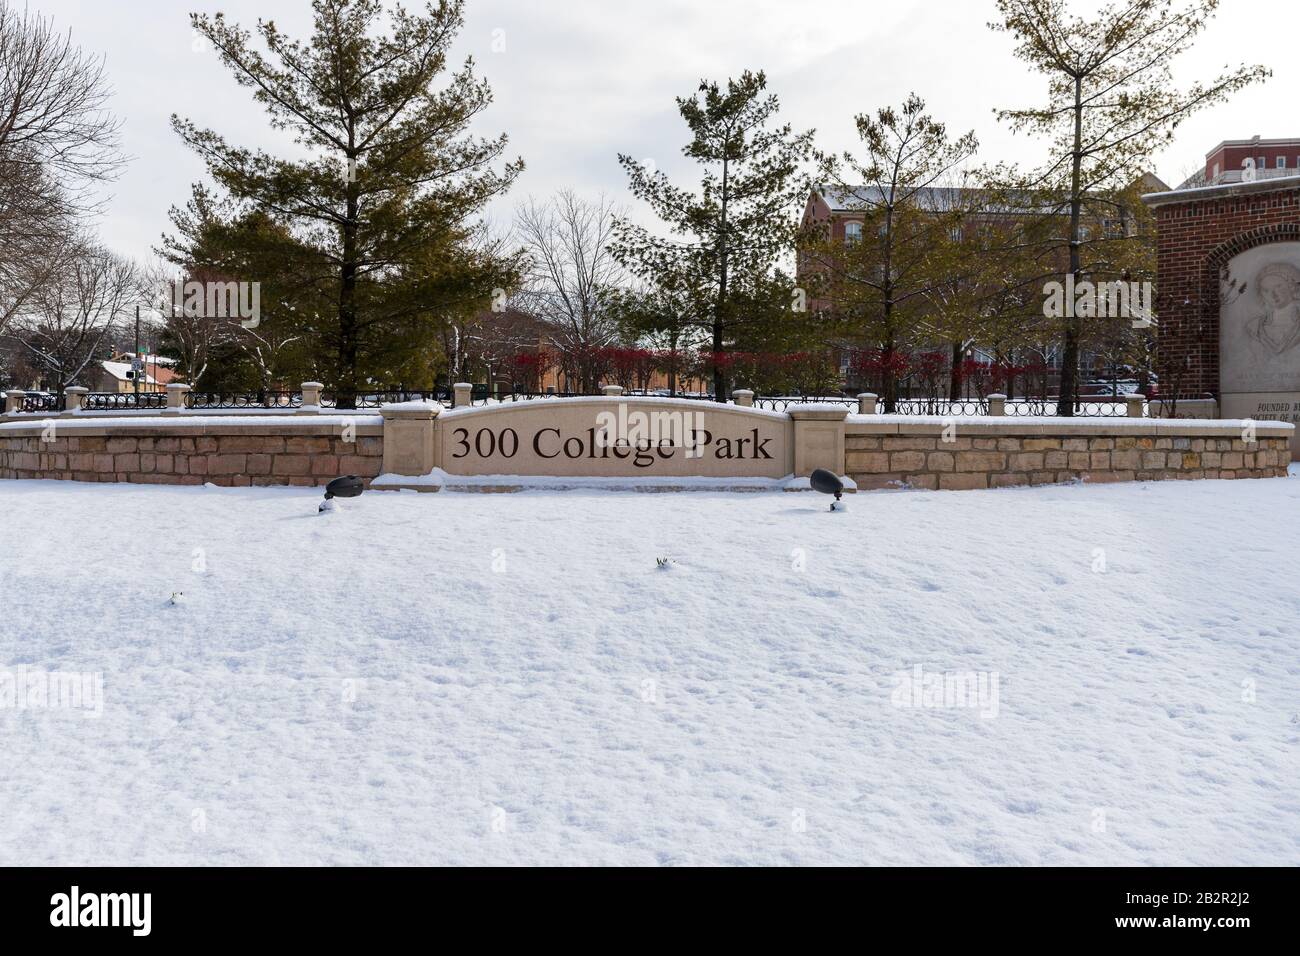 Dayton, OH, USA / 28. Februar 2020: 300 College Park, University of Dayton, mit frischem Winterschnee auf dem Boden. Stockfoto